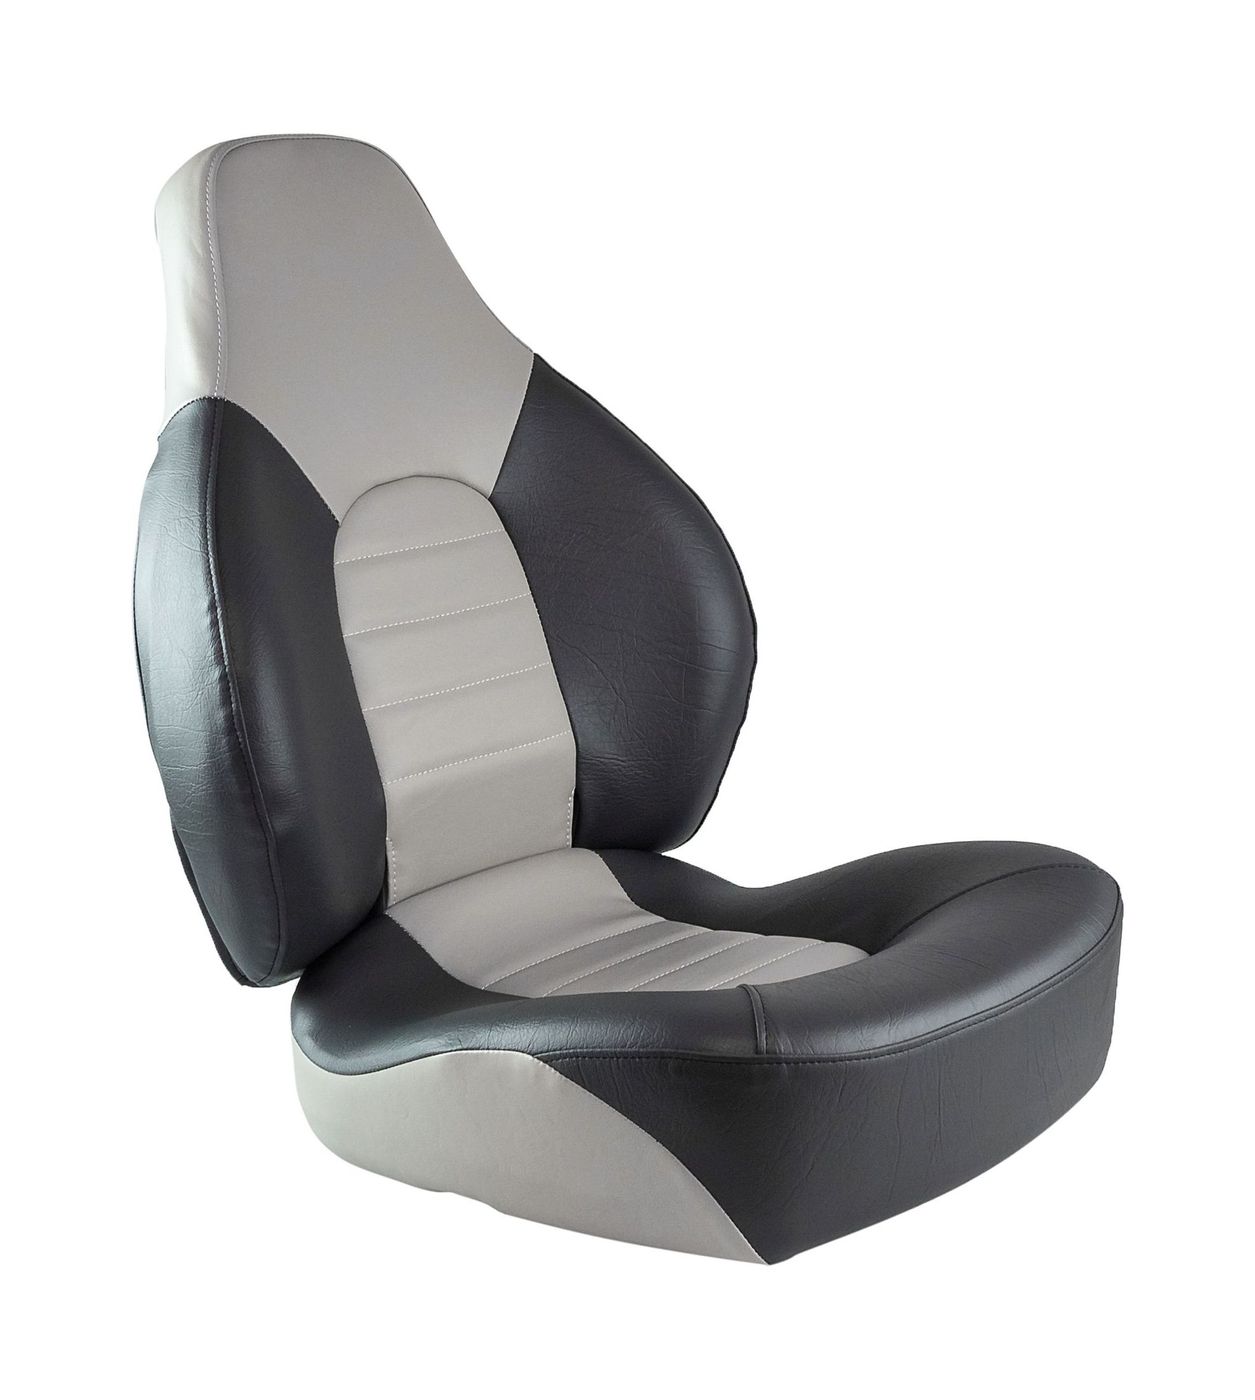 Кресло складное мягкое FISH PRO, серый/темно-серый 1041633 кресло складное мягкое skipper серый темно серый 1061057